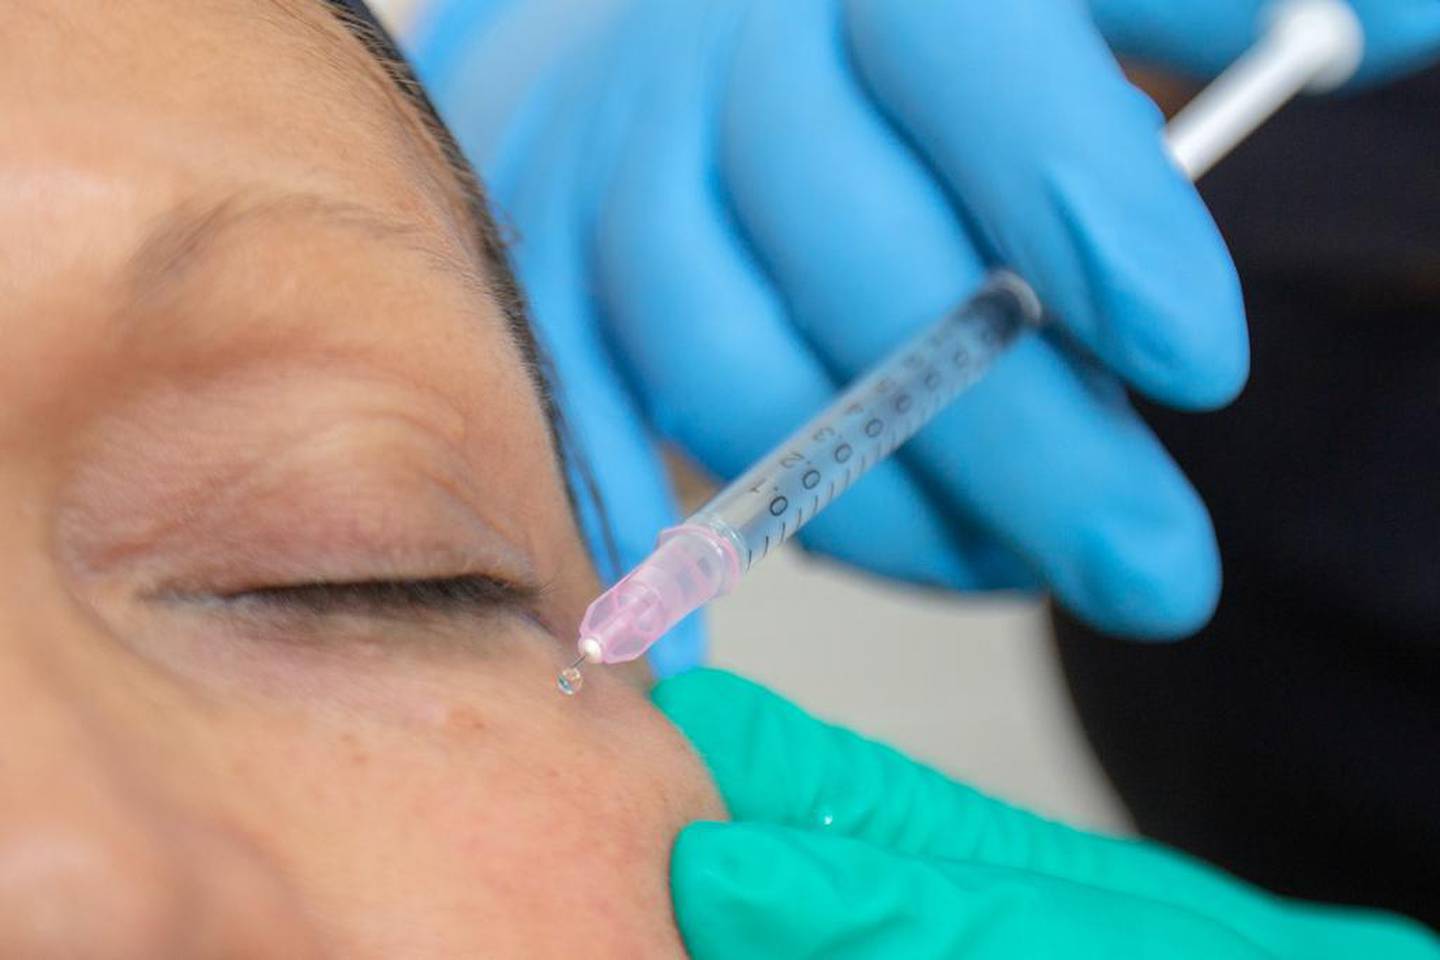 La doctora Karla Aguilar Moya, presidenta de la Asociación Científica Costarricense de Longevidad y Medicina Estética (ACCOLME), denuncia que hay epidemia de odontólogos poniendo Botox.